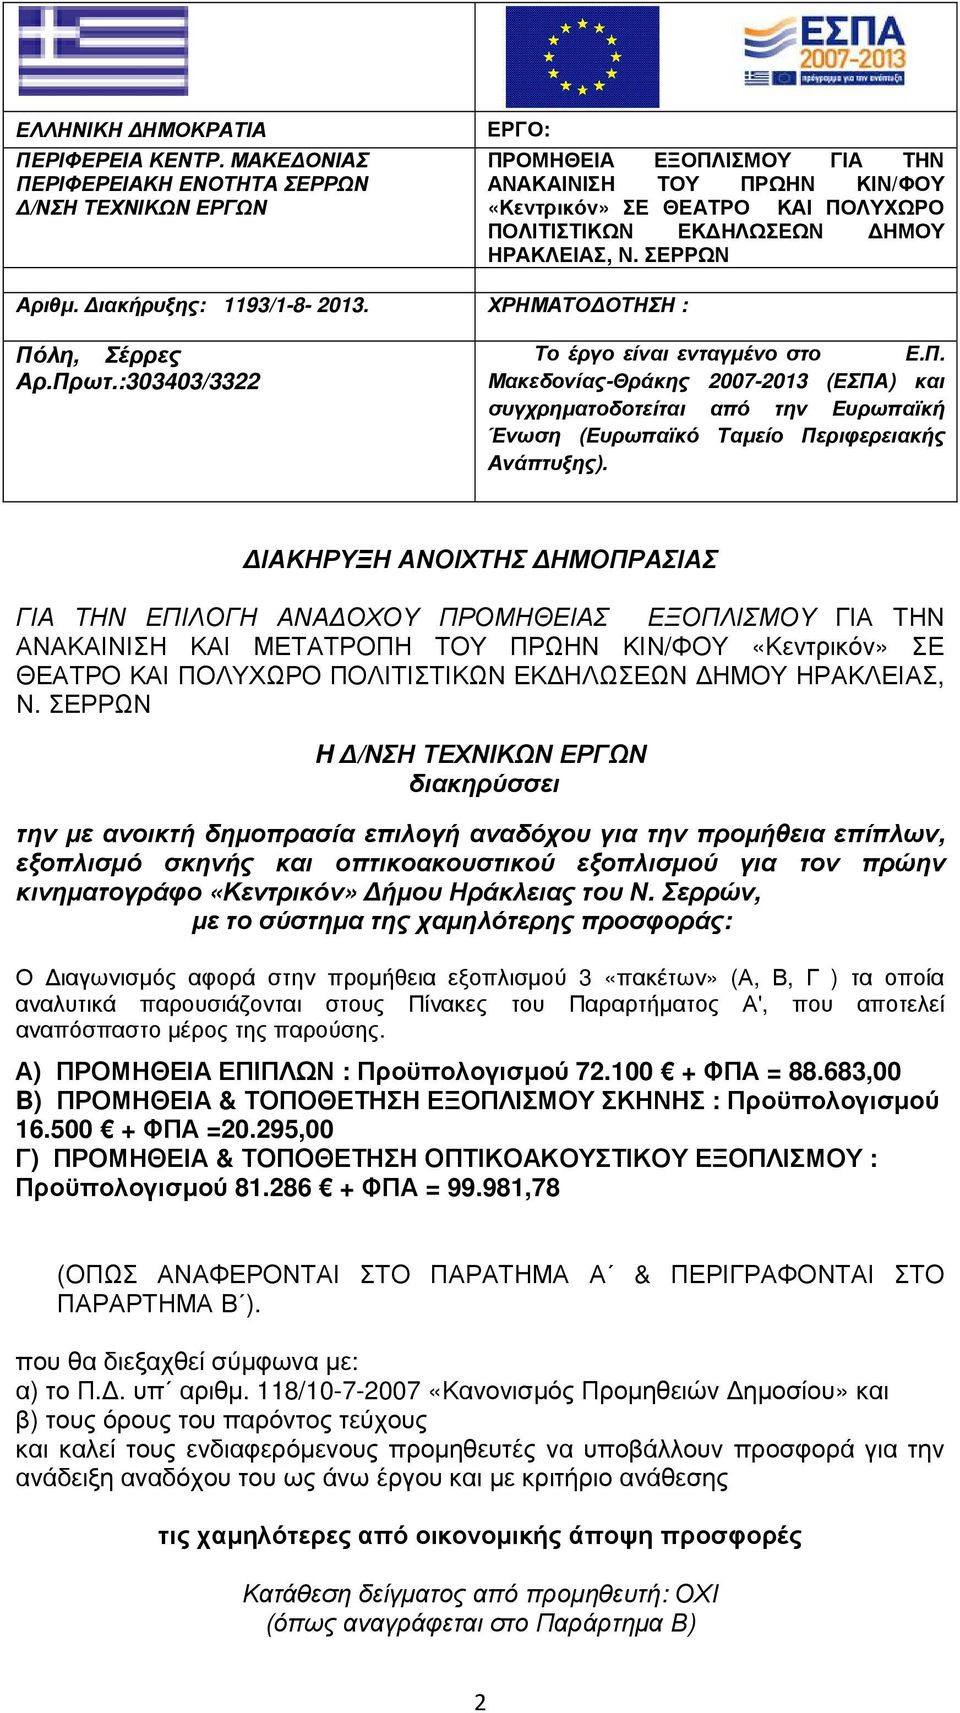 ΣΕΡΡΩΝ Αριθµ. ιακήρυξης: 1193/1-8- 2013. ΧΡΗΜΑΤΟ ΟΤΗΣΗ : Πόλη, Σέρρες Αρ.Πρωτ.:303403/3322 Το έργο είναι ενταγµένο στο Ε.Π. Μακεδονίας-Θράκης 2007-2013 (ΕΣΠΑ) και συγχρηµατοδοτείται από την Ευρωπαϊκή Ένωση (Ευρωπαϊκό Ταµείο Περιφερειακής Ανάπτυξης).